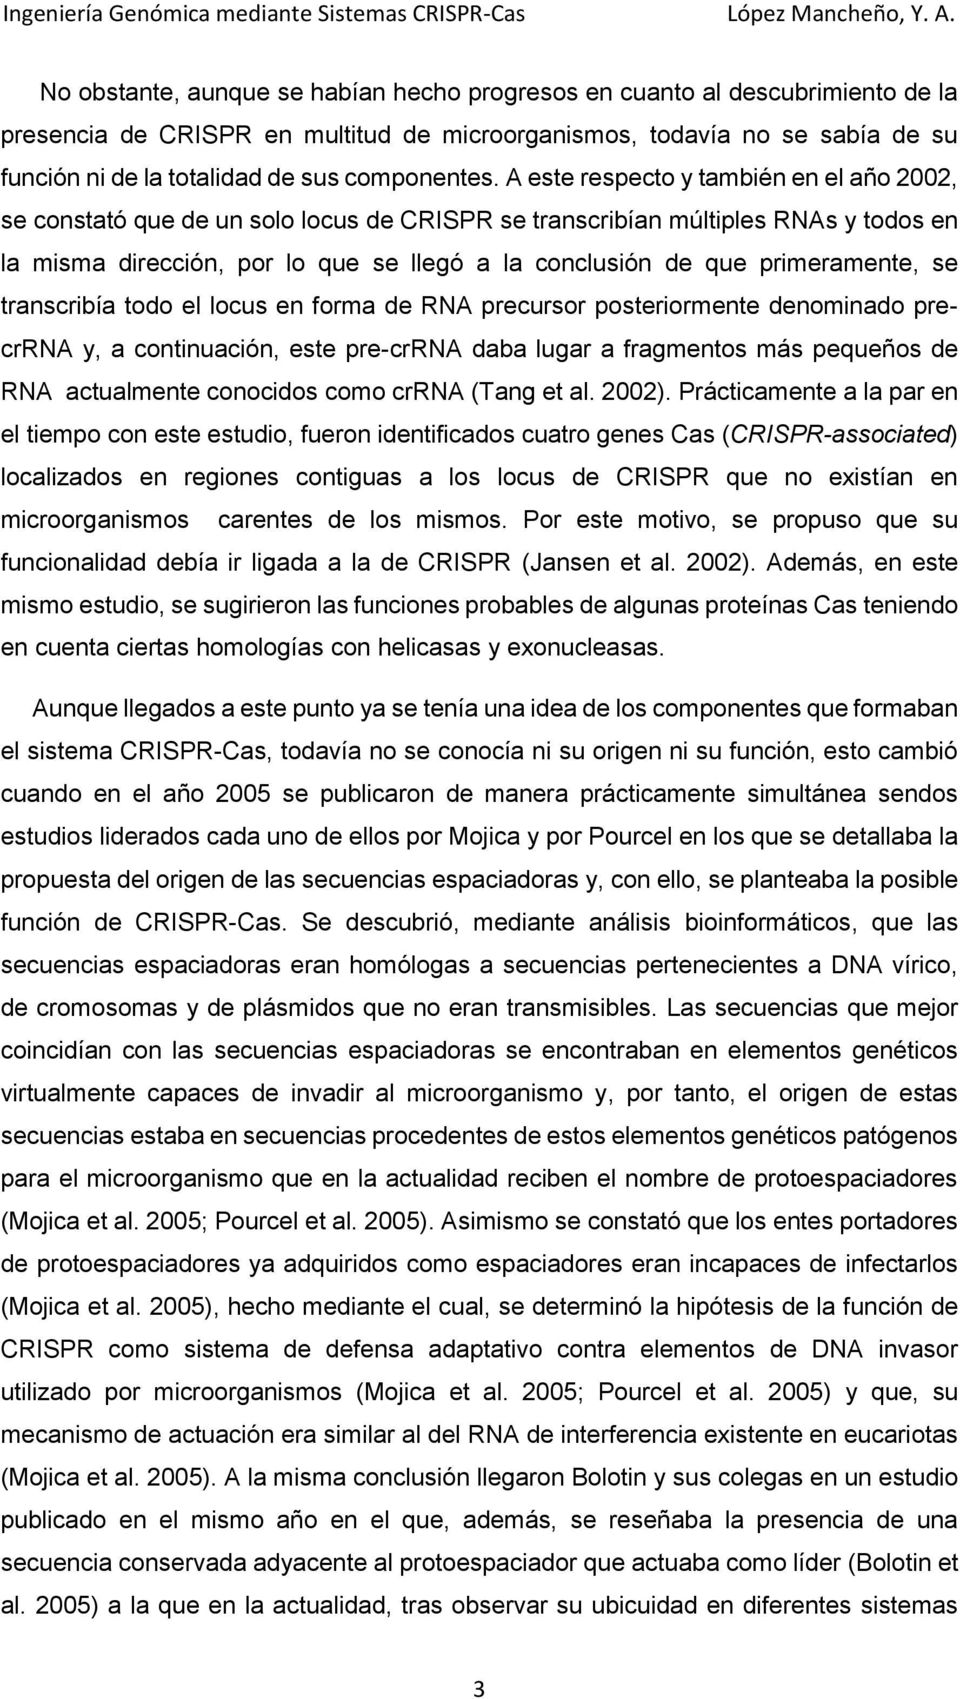 A este respecto y también en el año 2002, se constató que de un solo locus de CRISPR se transcribían múltiples RNAs y todos en la misma dirección, por lo que se llegó a la conclusión de que